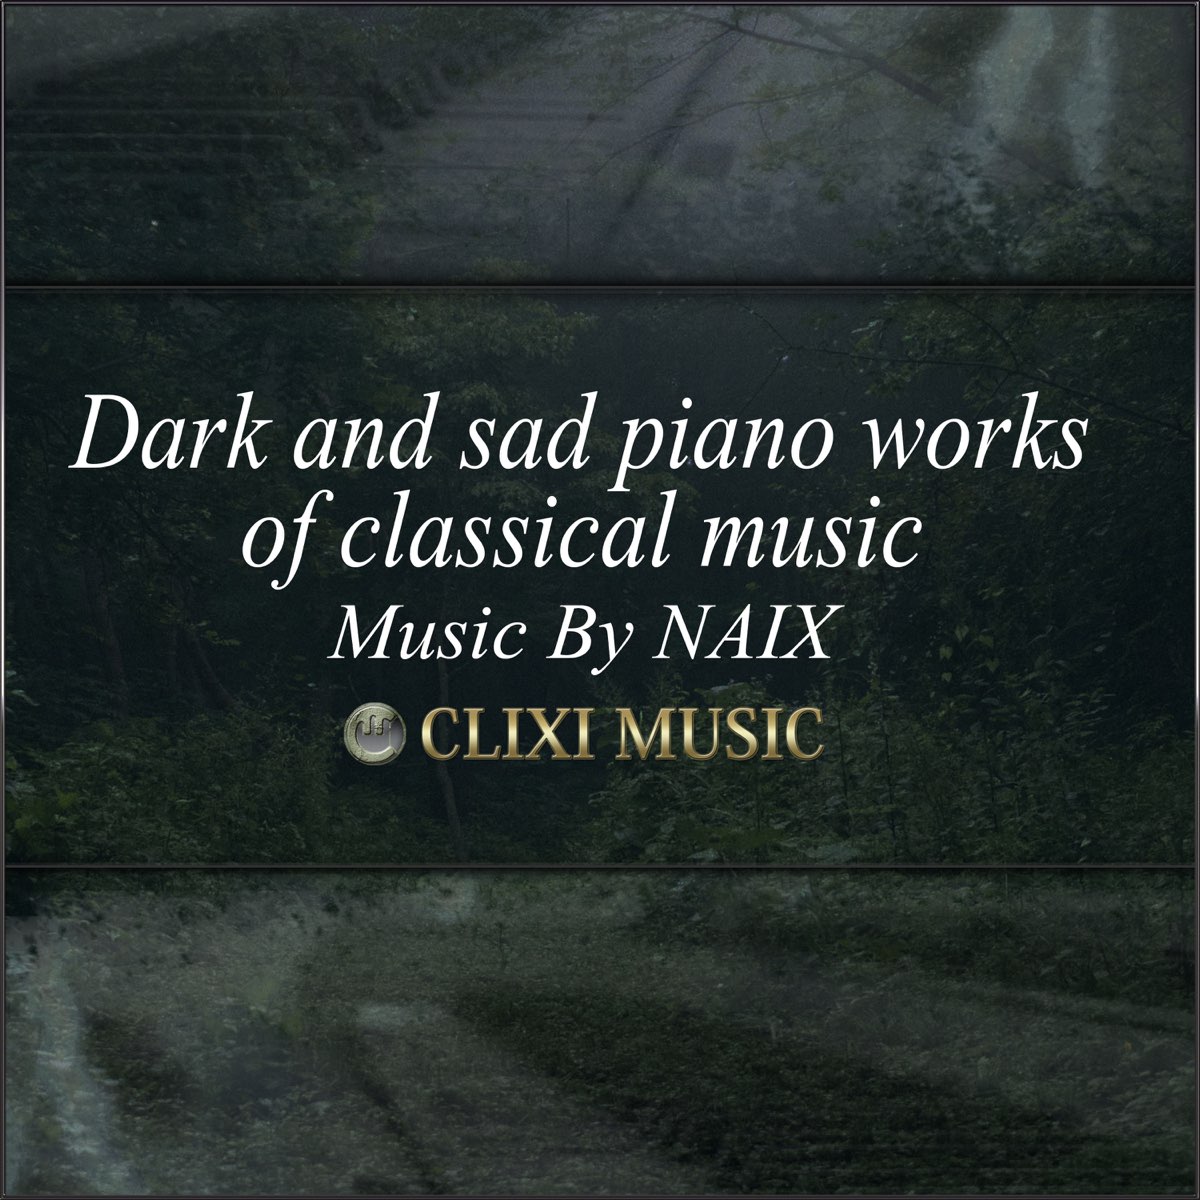 Naixの 暗い 悲しいクラシック音楽のピアノ名曲集 をapple Musicで